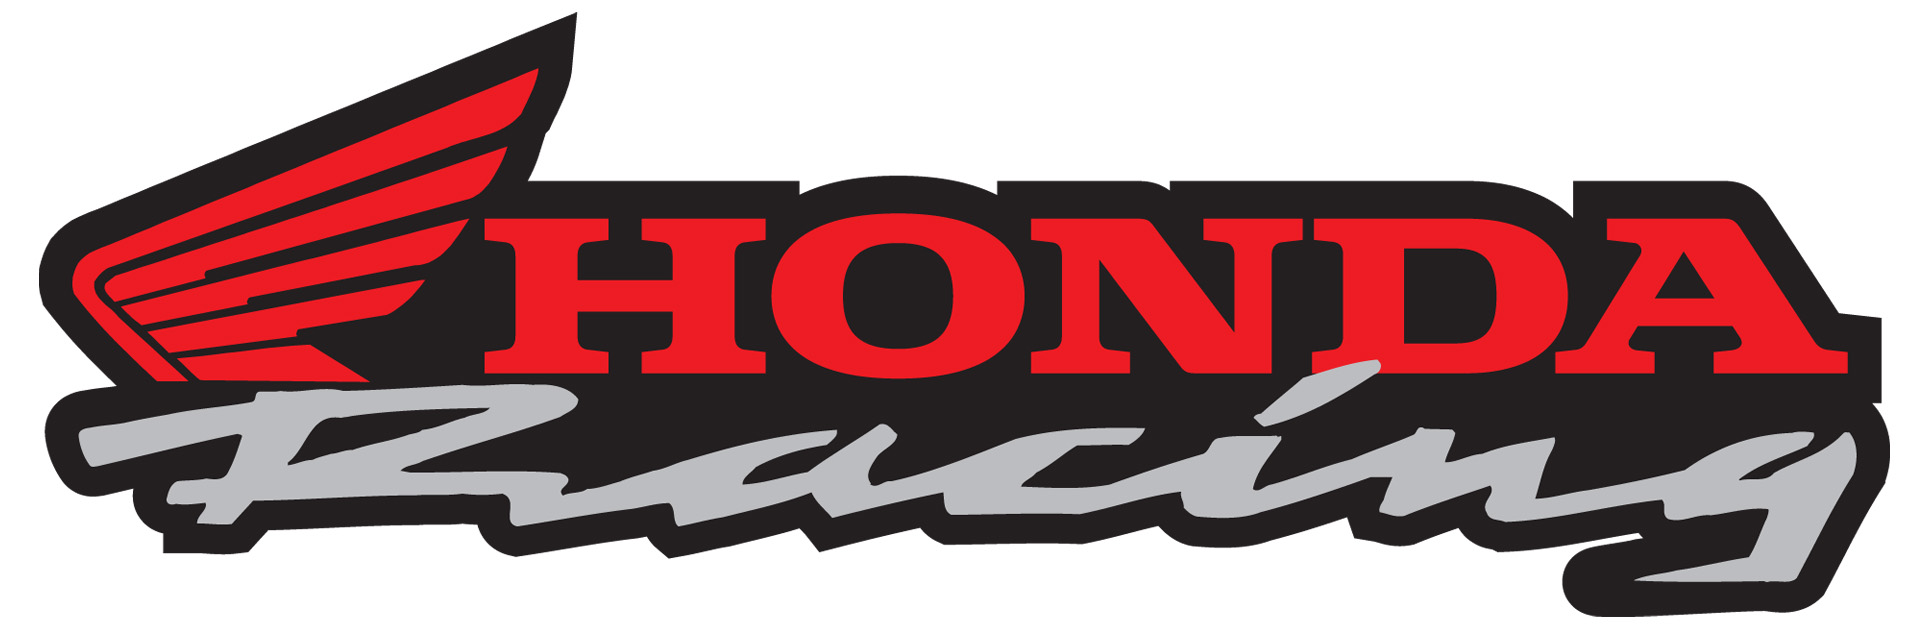 Honda racing logos #1